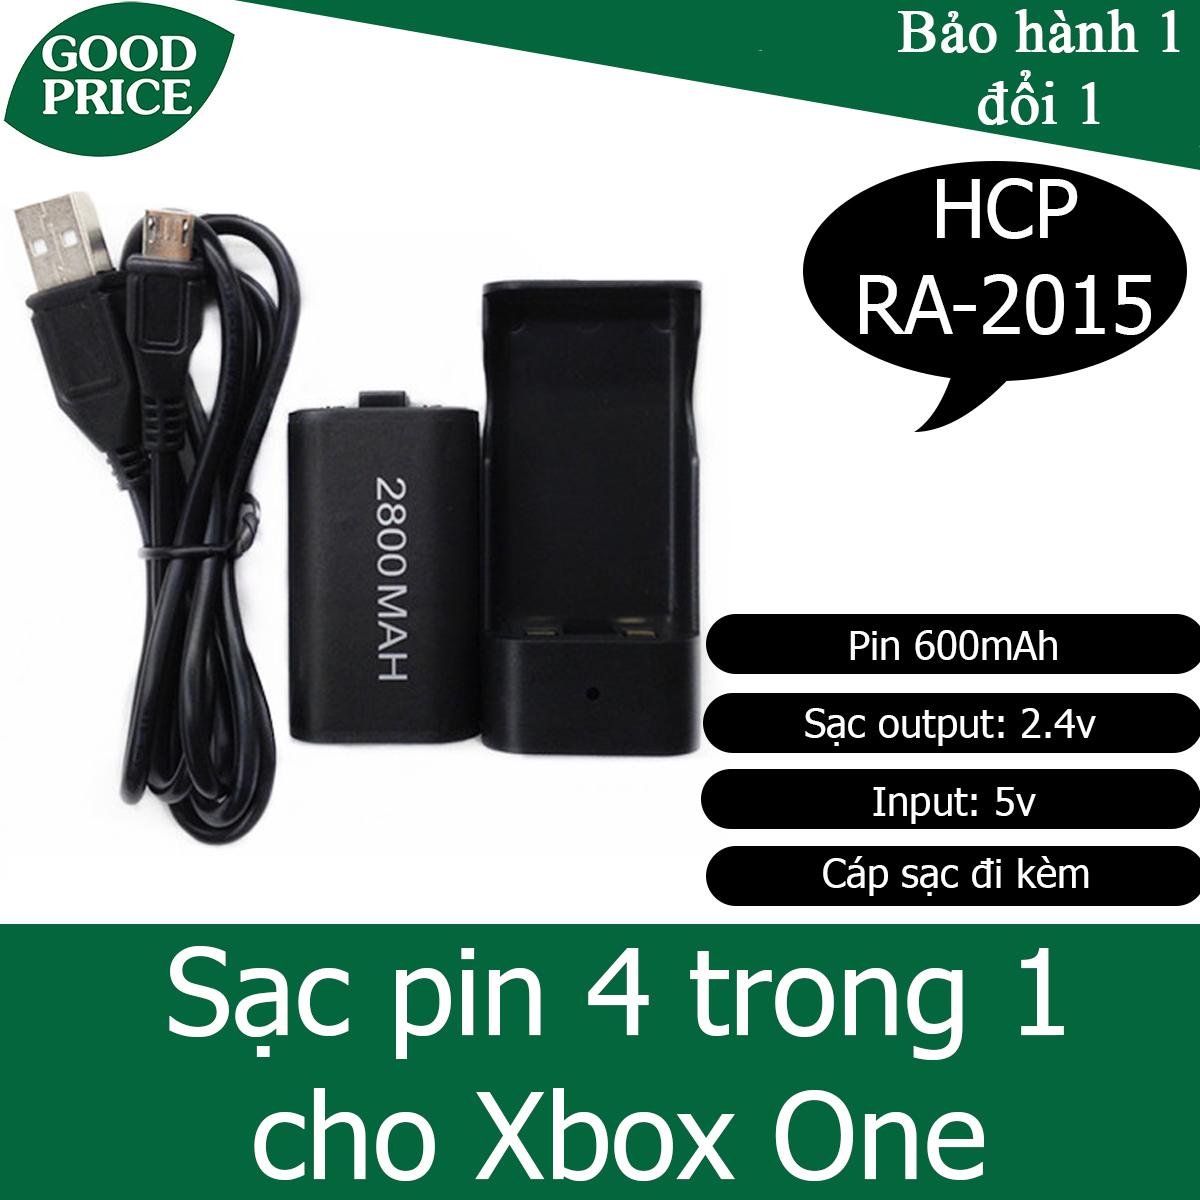 Bộ sạc kèm pin 4 trong 1 cho Xbox One - HPG RA-2015